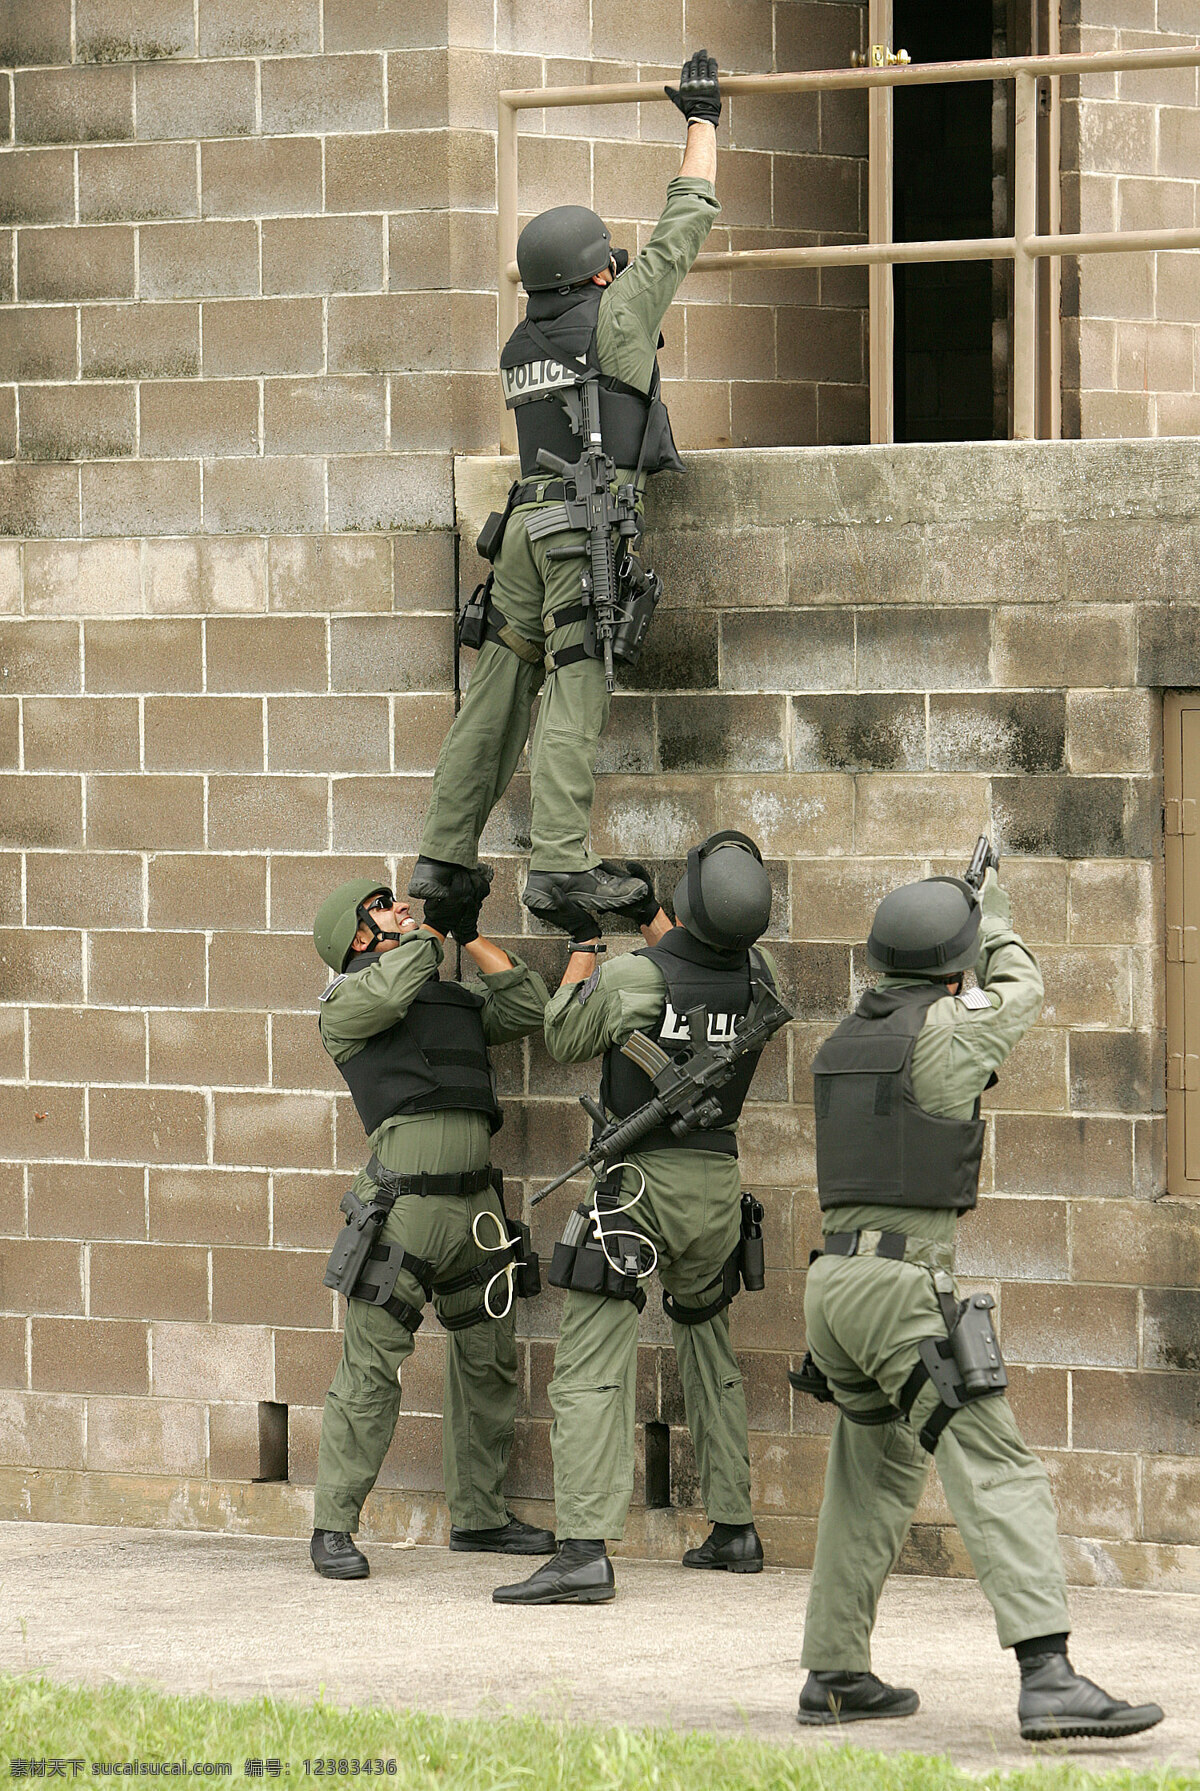 警察特警 警察 特警 制服 武器 装备 楼房 攀登 职业人物 人物图库